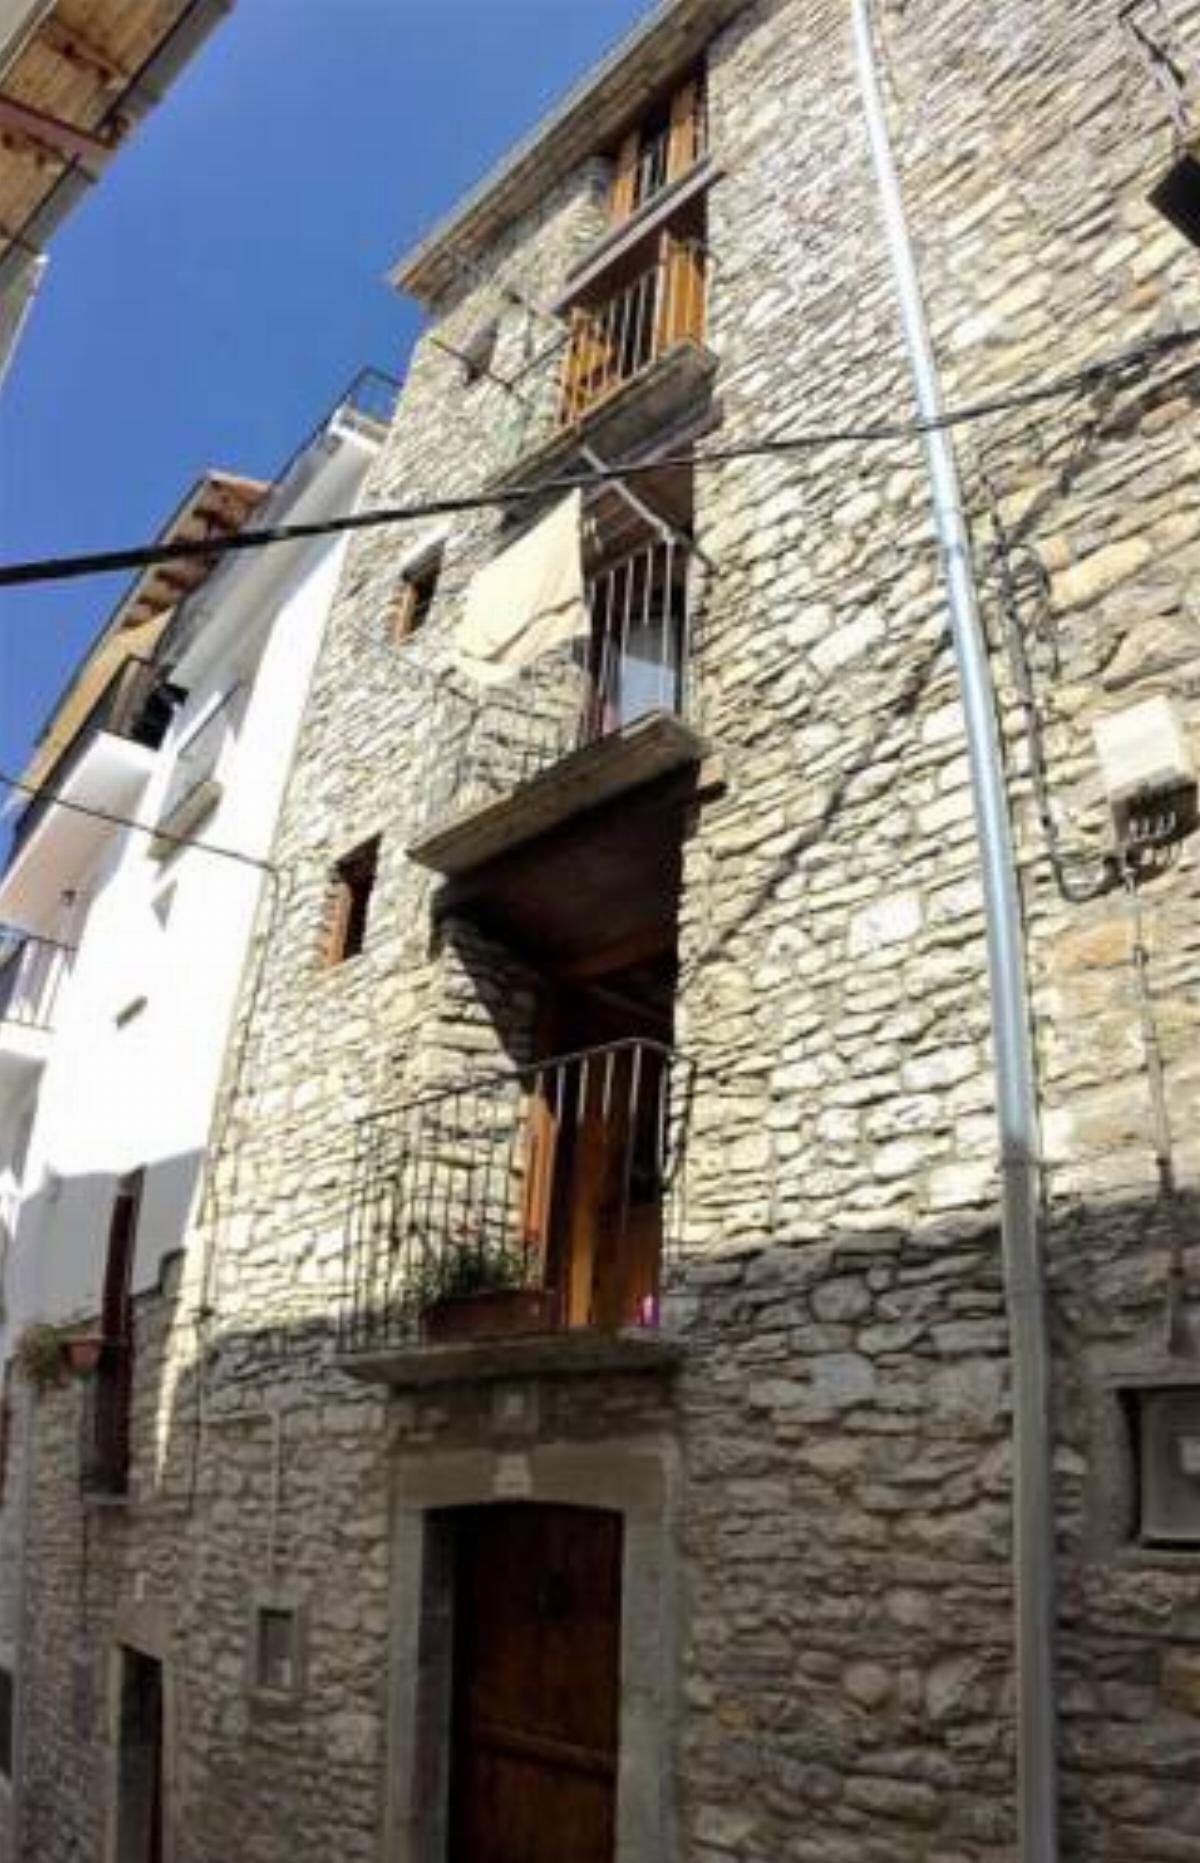 Casa con Encanto Hotel Boltaña Spain